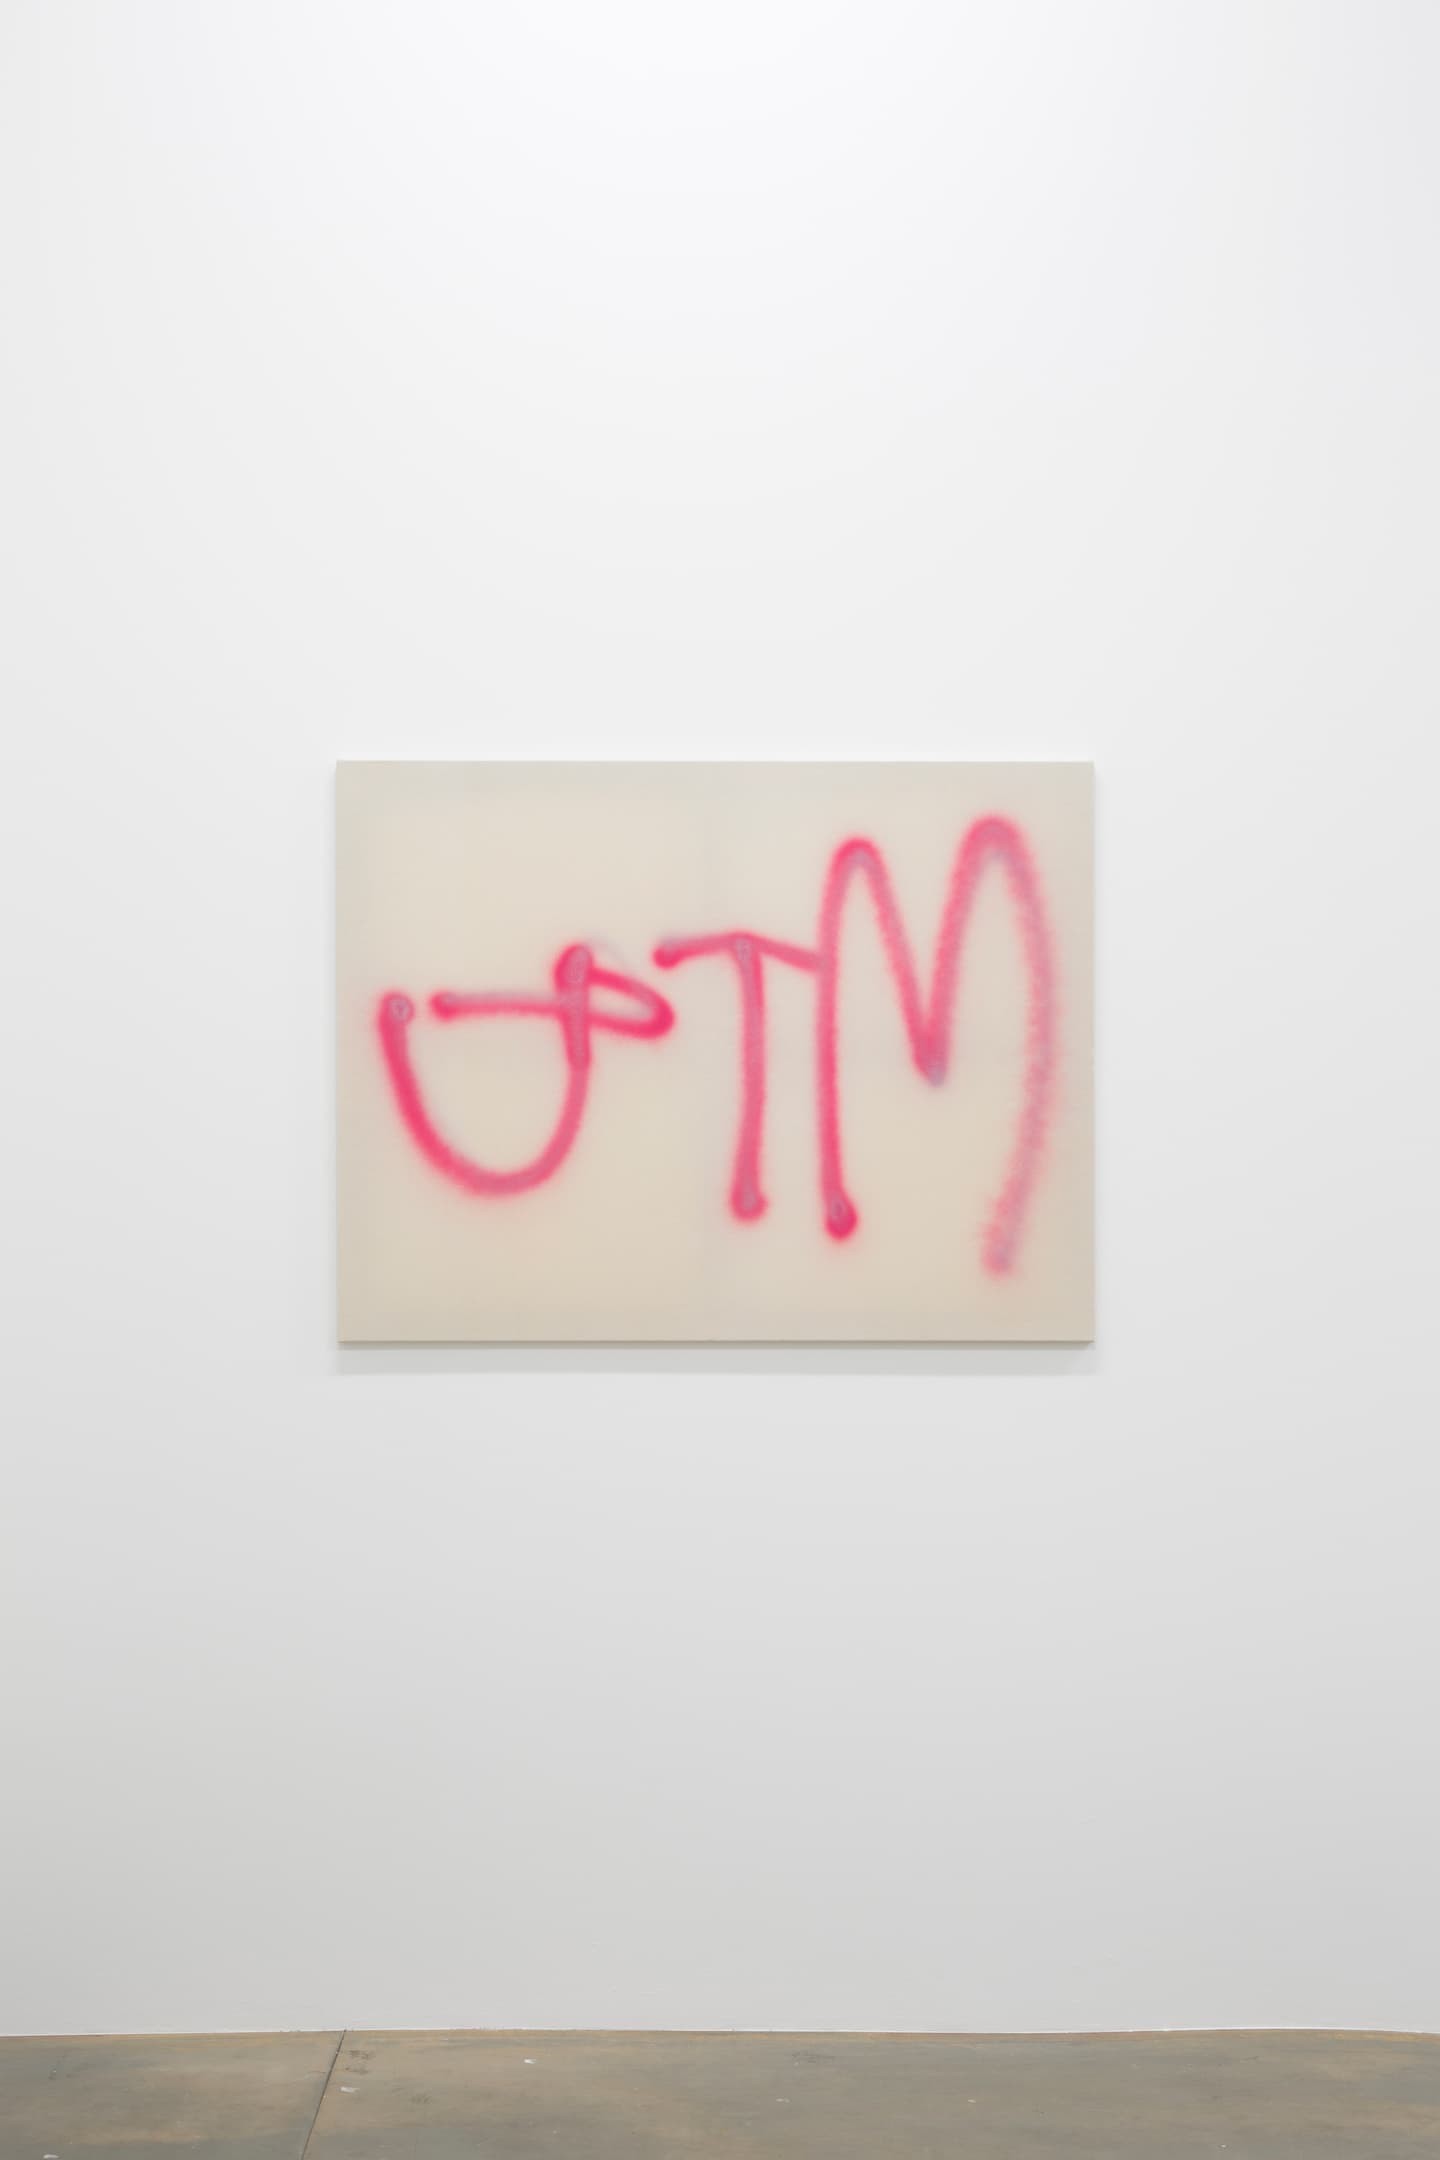 Camila Oliveira Fairclough, JTM, 2020. Spray sur toile, 89 x 116 cm. Achat à la galerie Laurent Gaudin. Collection Frac île-de-france. ©DR